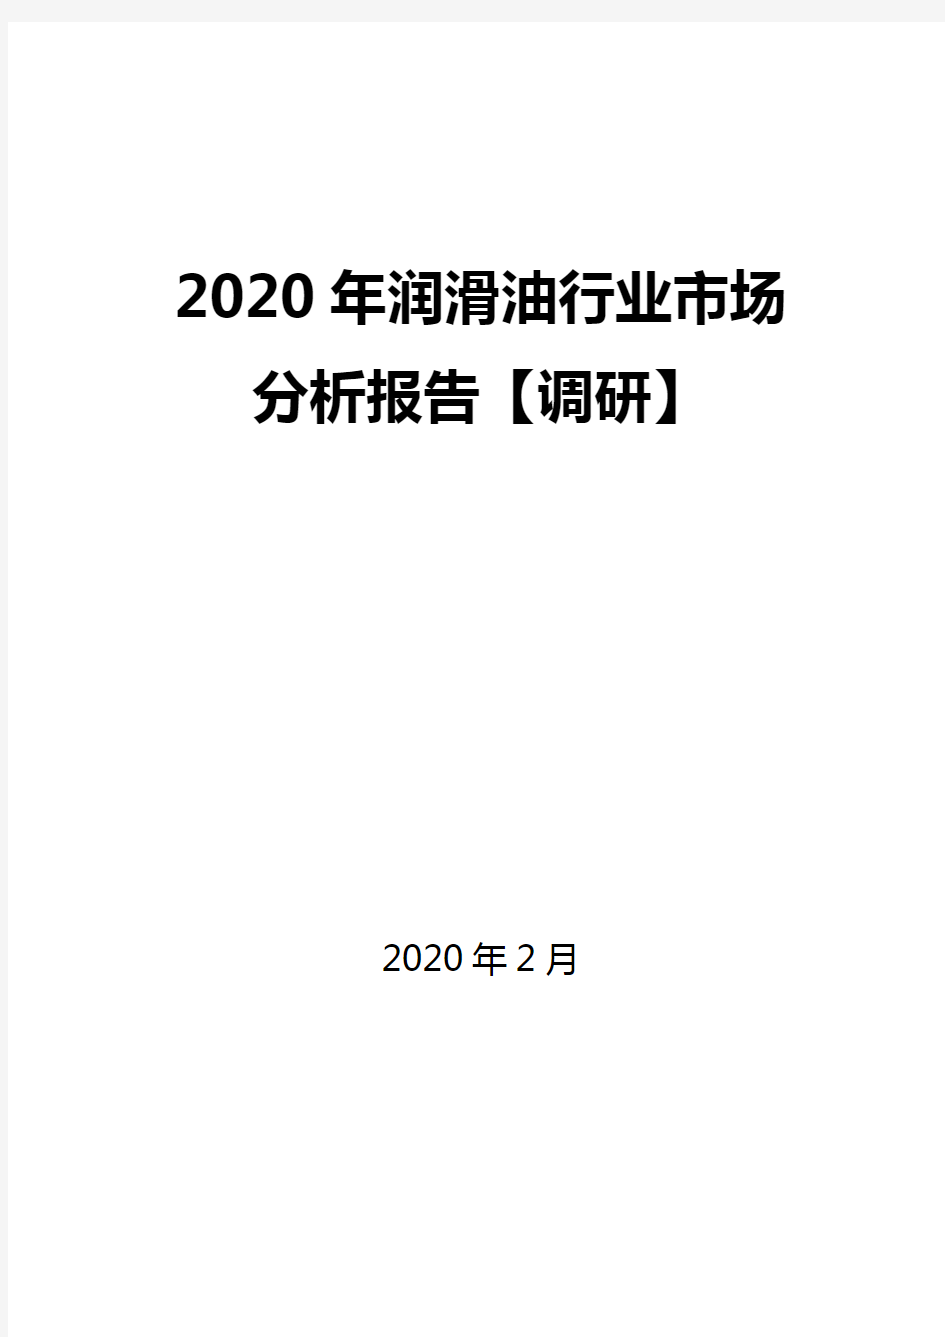 2020年润滑油行业市场分析报告【调研】